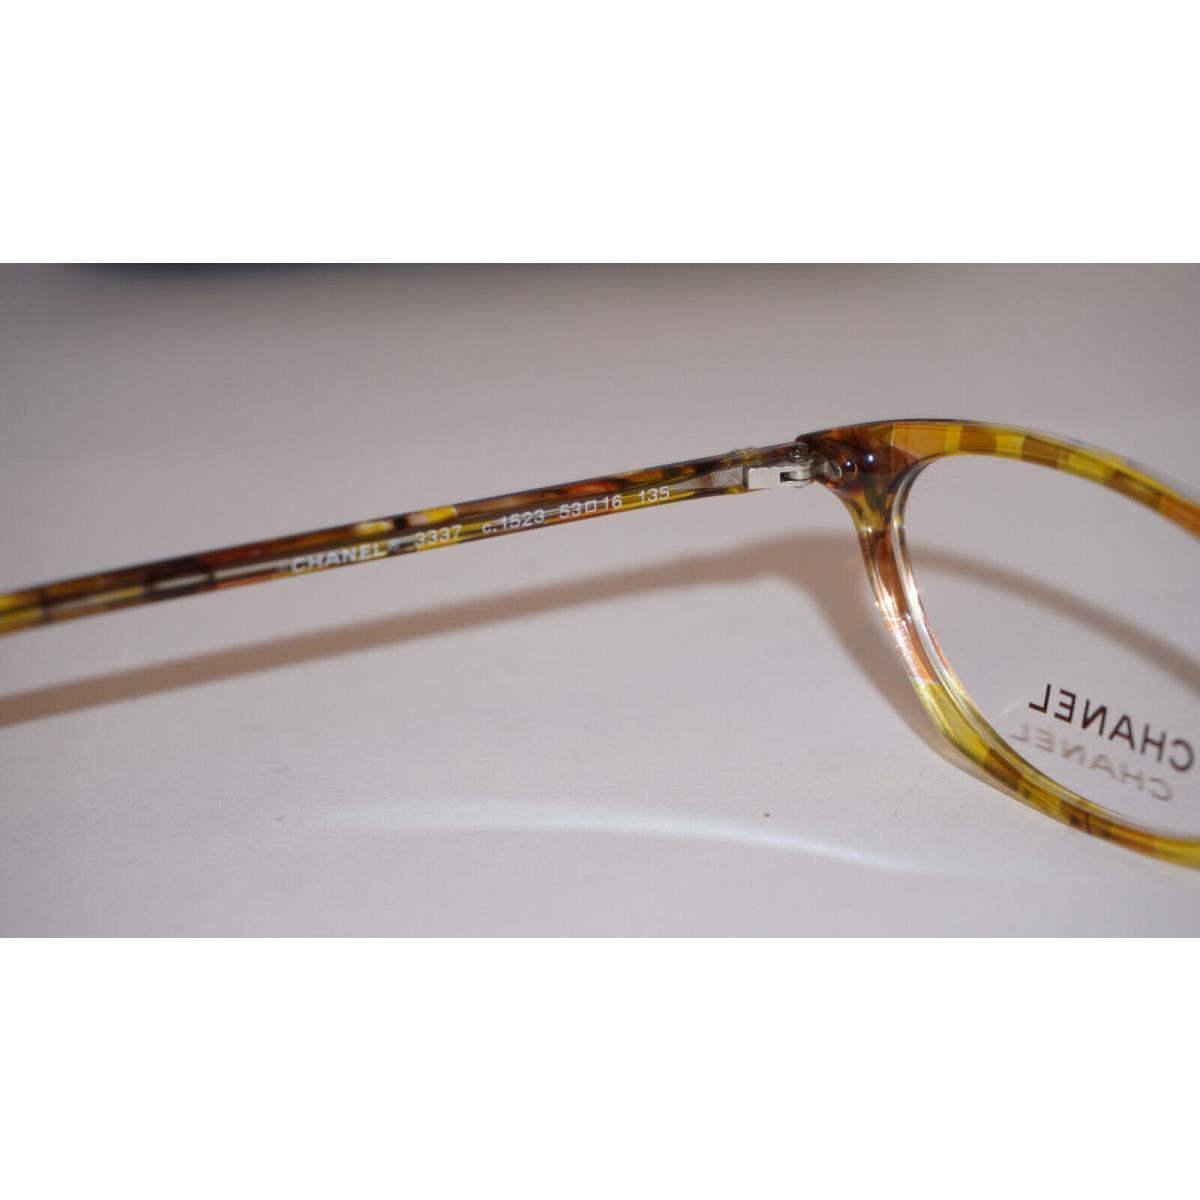 Chanel eyeglasses  - Yellow Havana , Yellow Havana Frame 6